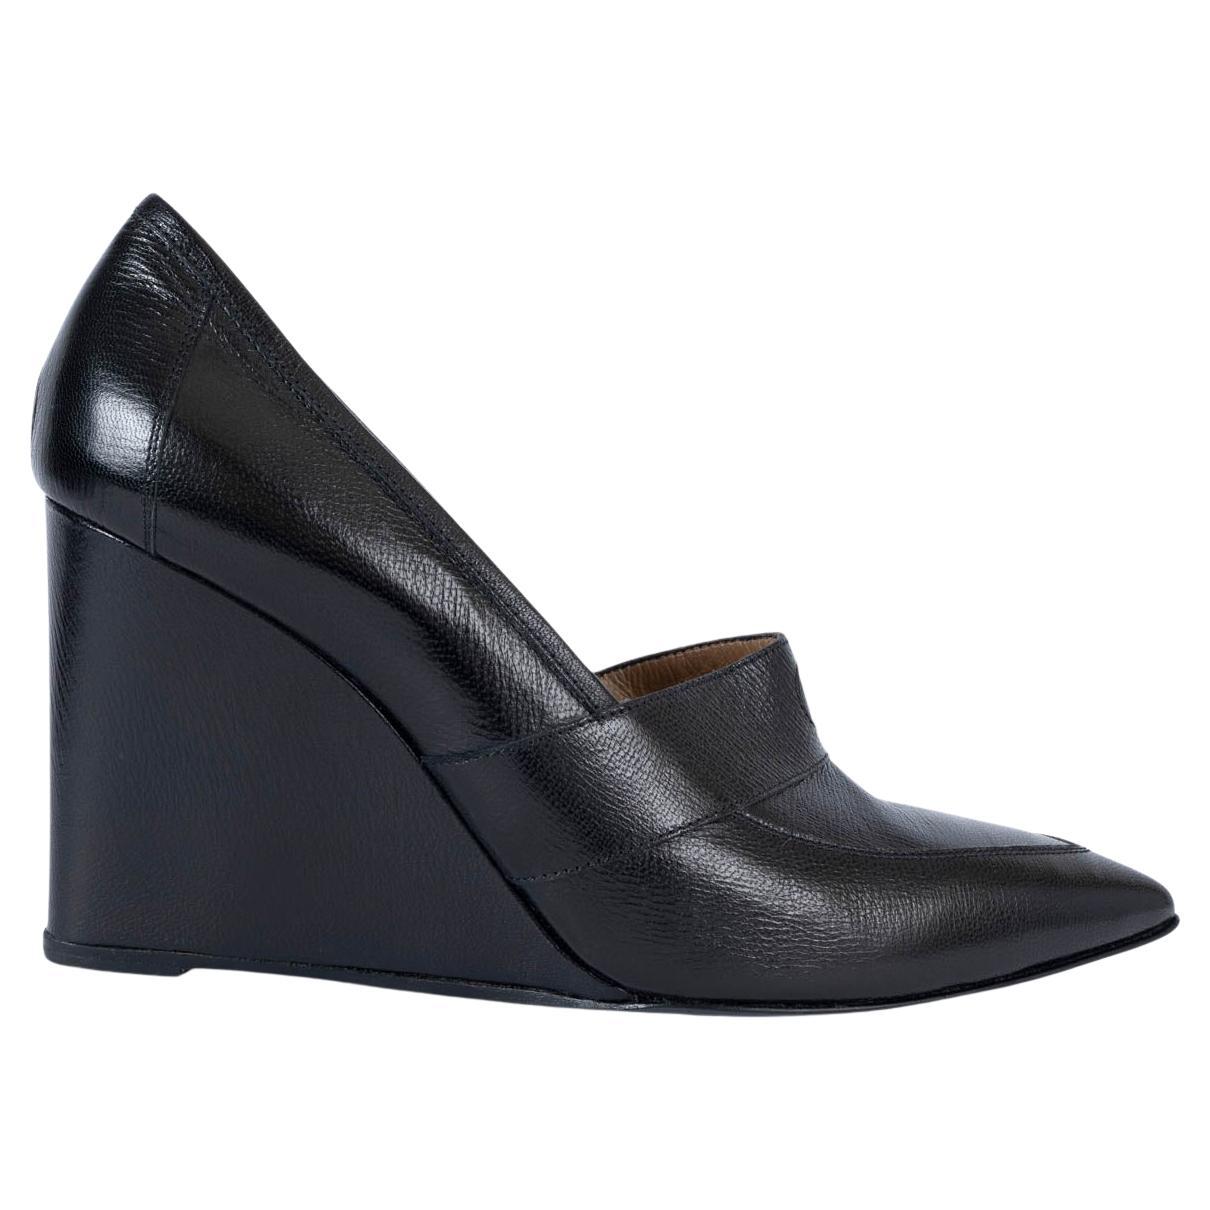 HERMES cuir noir POINTED TOE TOE WEDGE Pumps Shoes 39 en vente